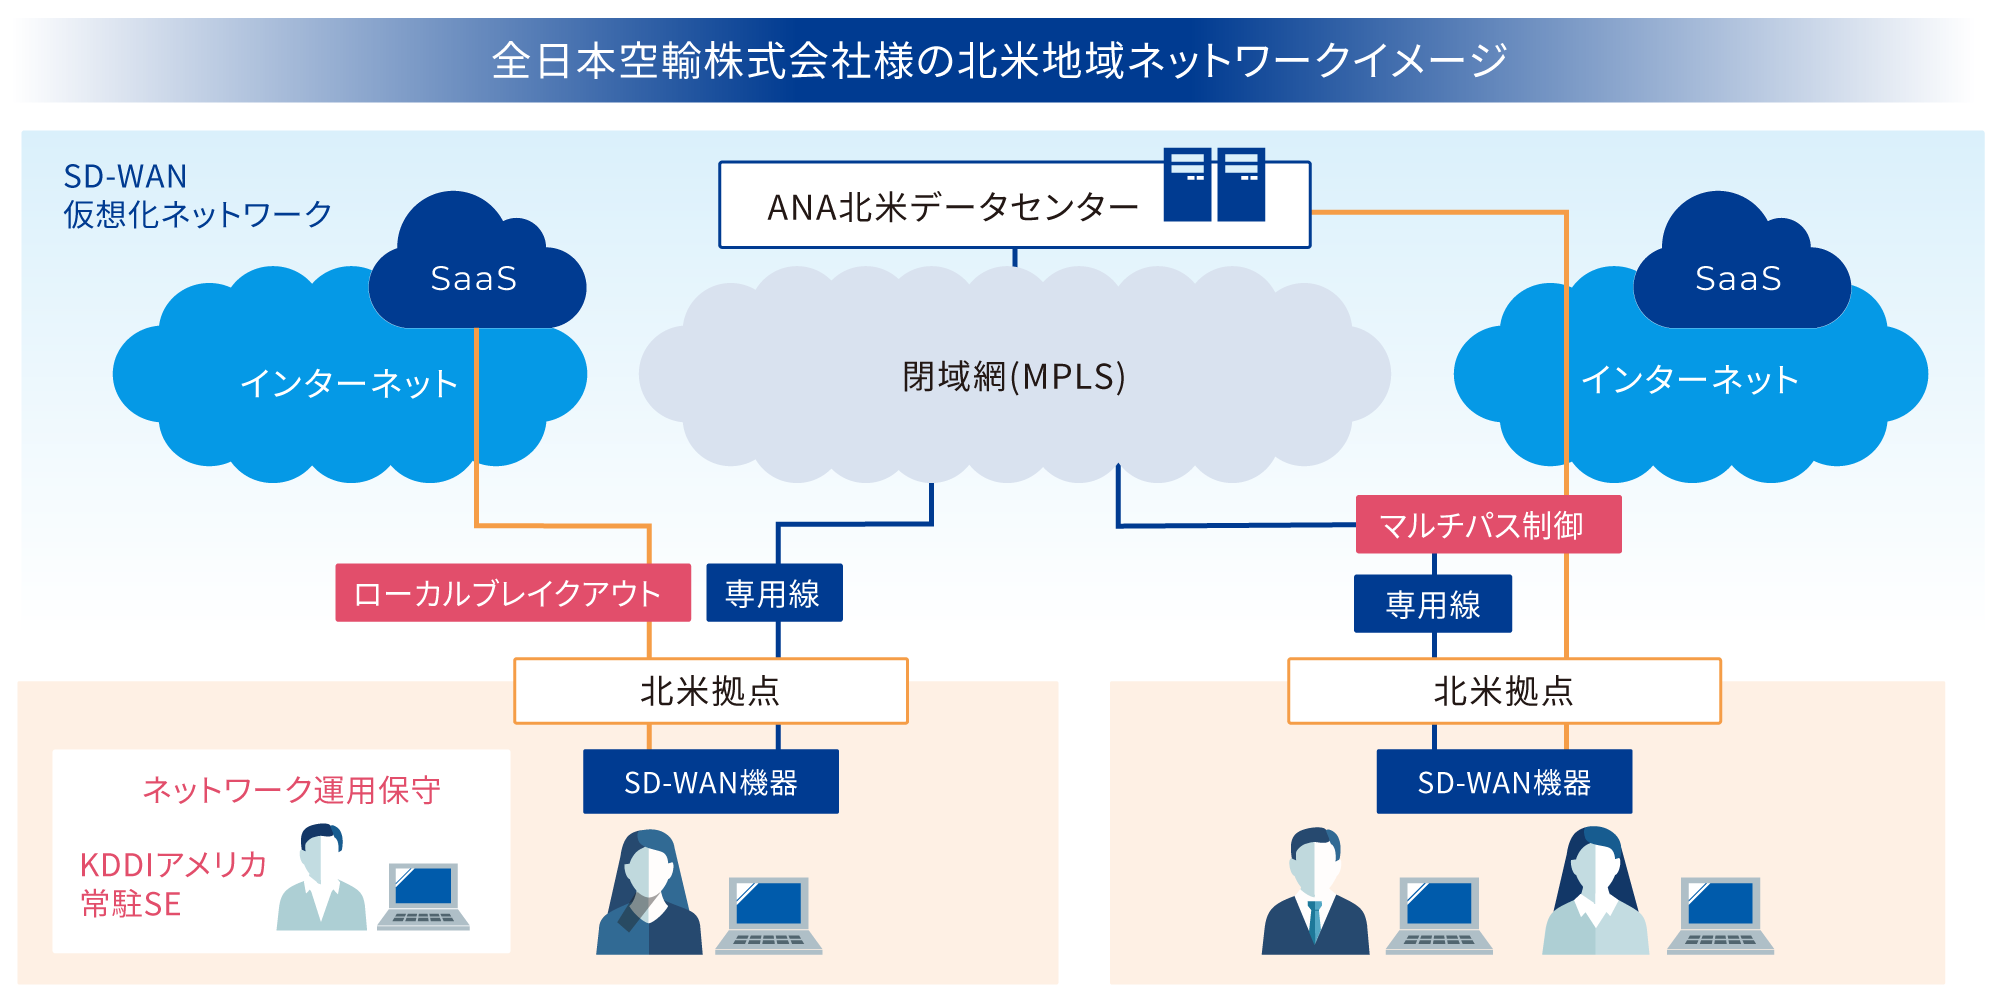 全日本空輸株式会社様の北米地域ネットワークイメージ